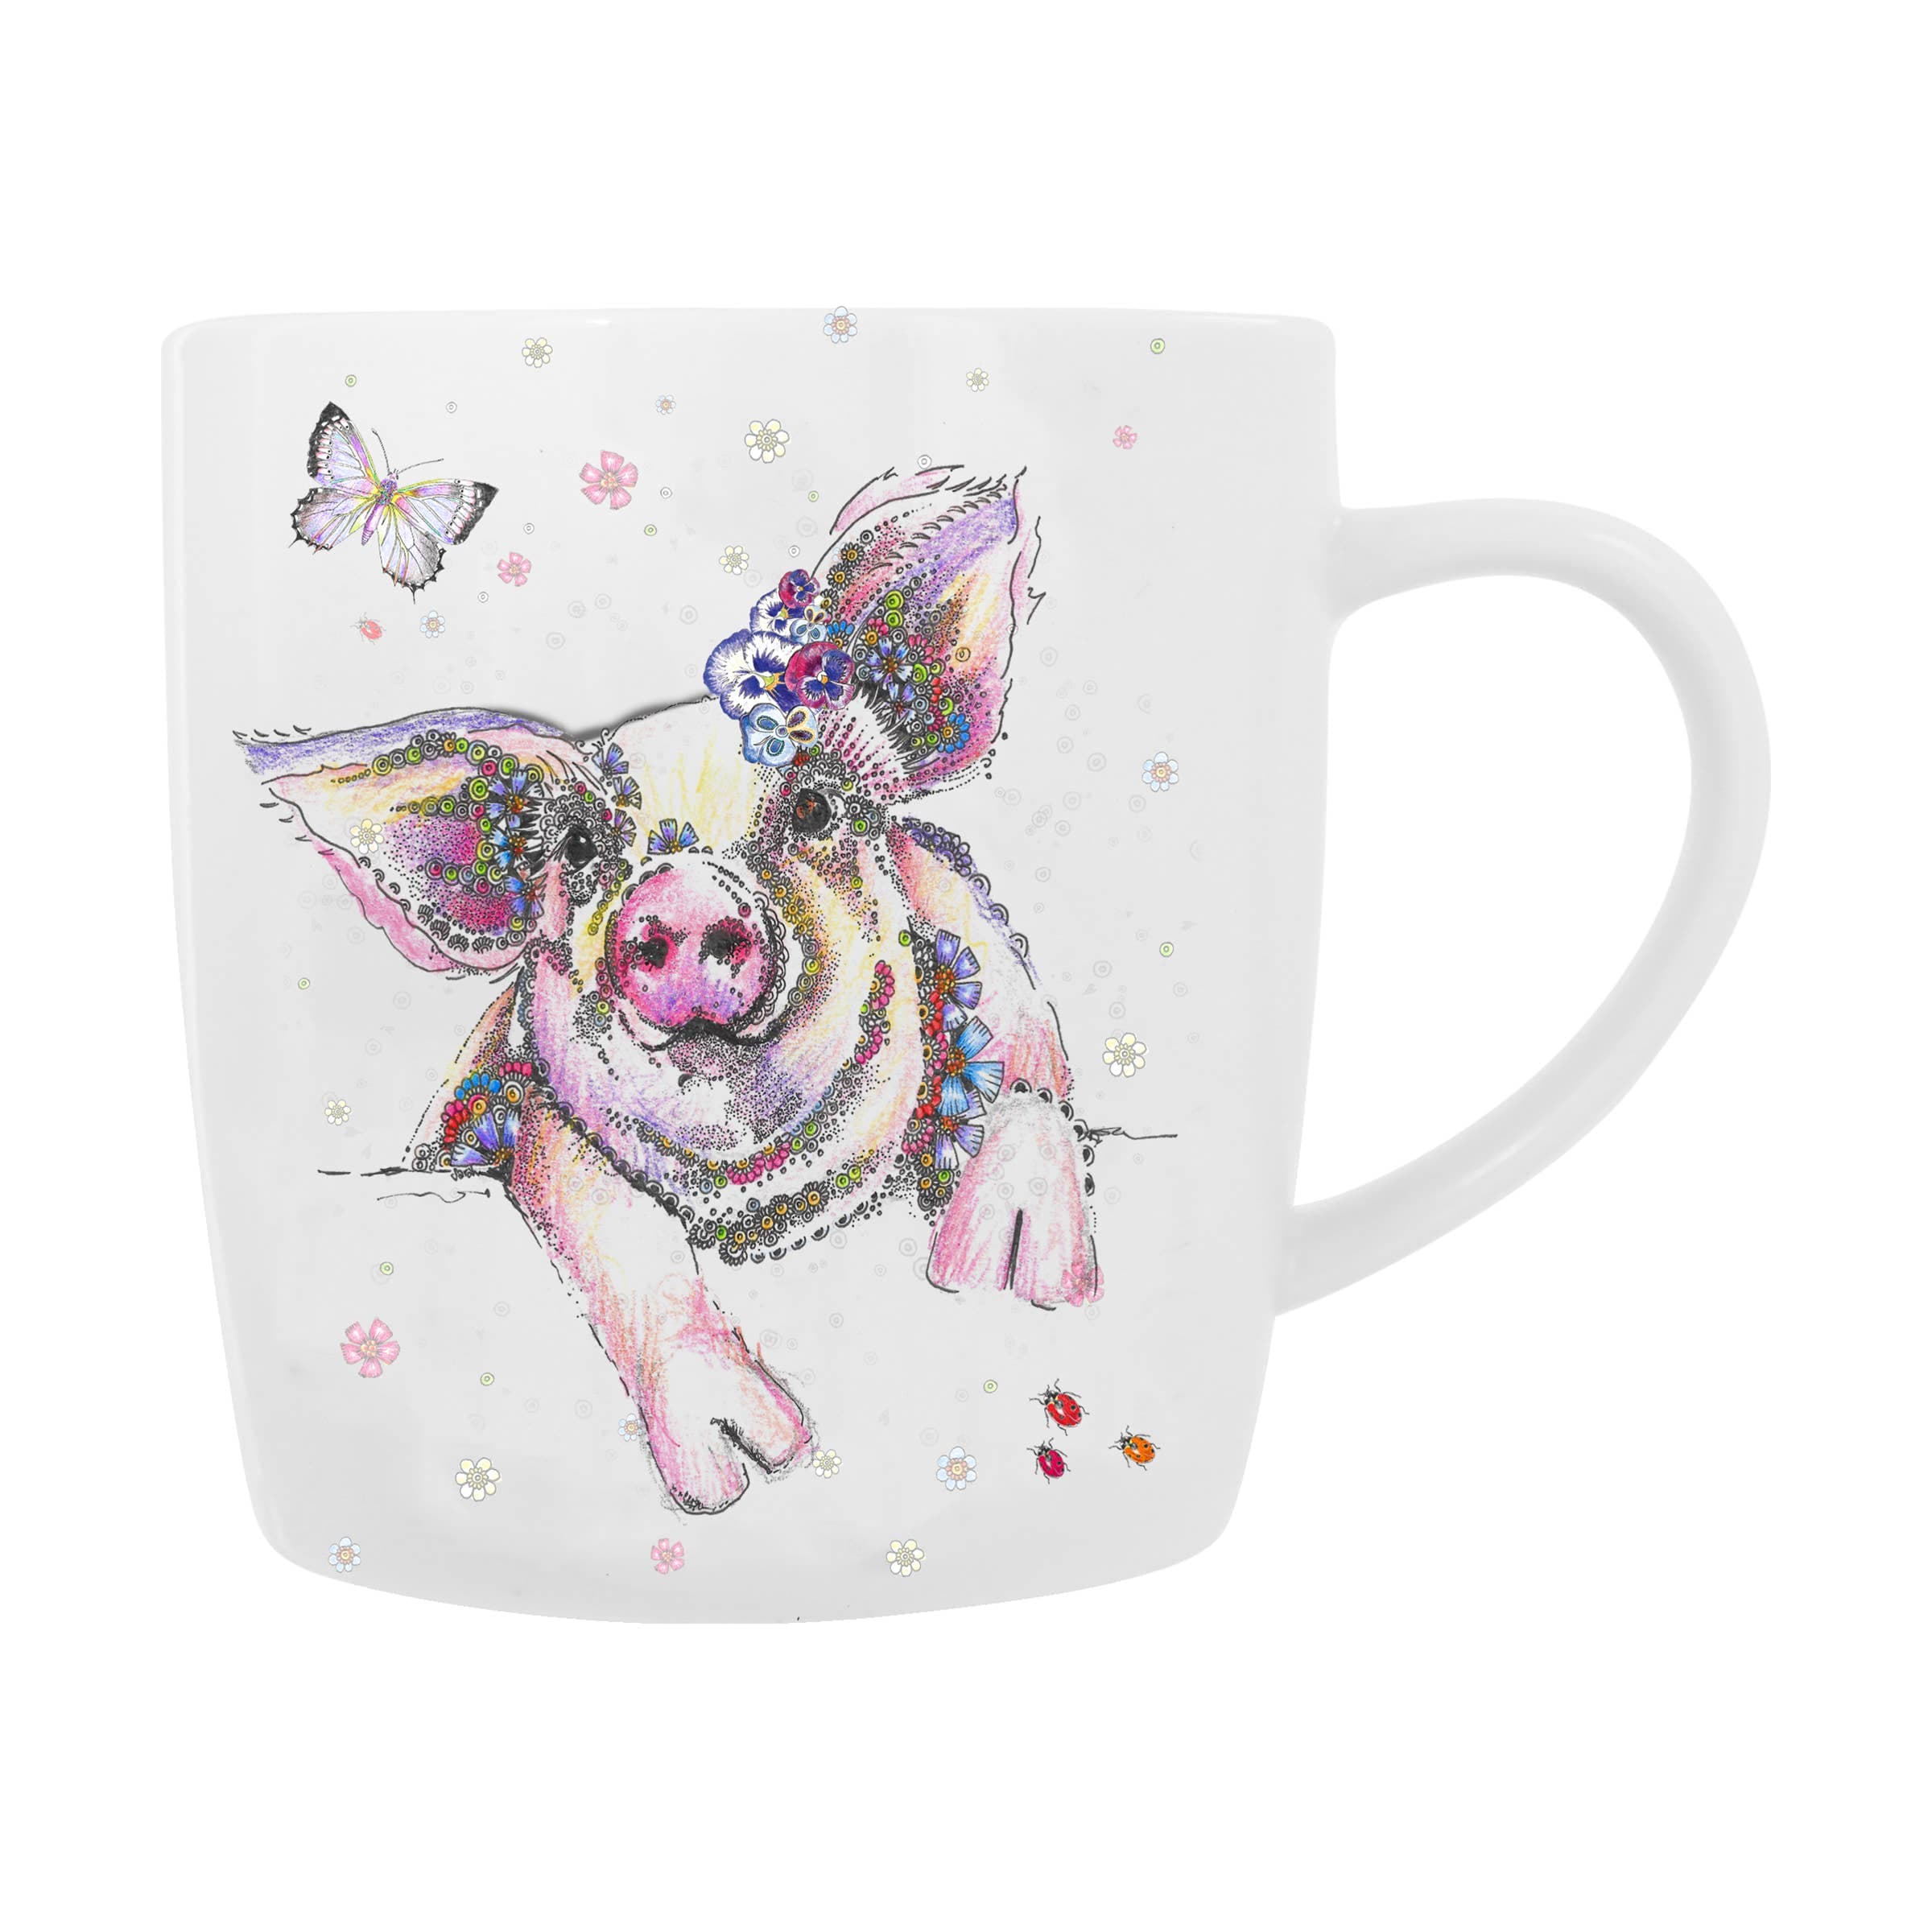 Cutest Pig Mug!  DOODLEICIOUS Bree Merryn